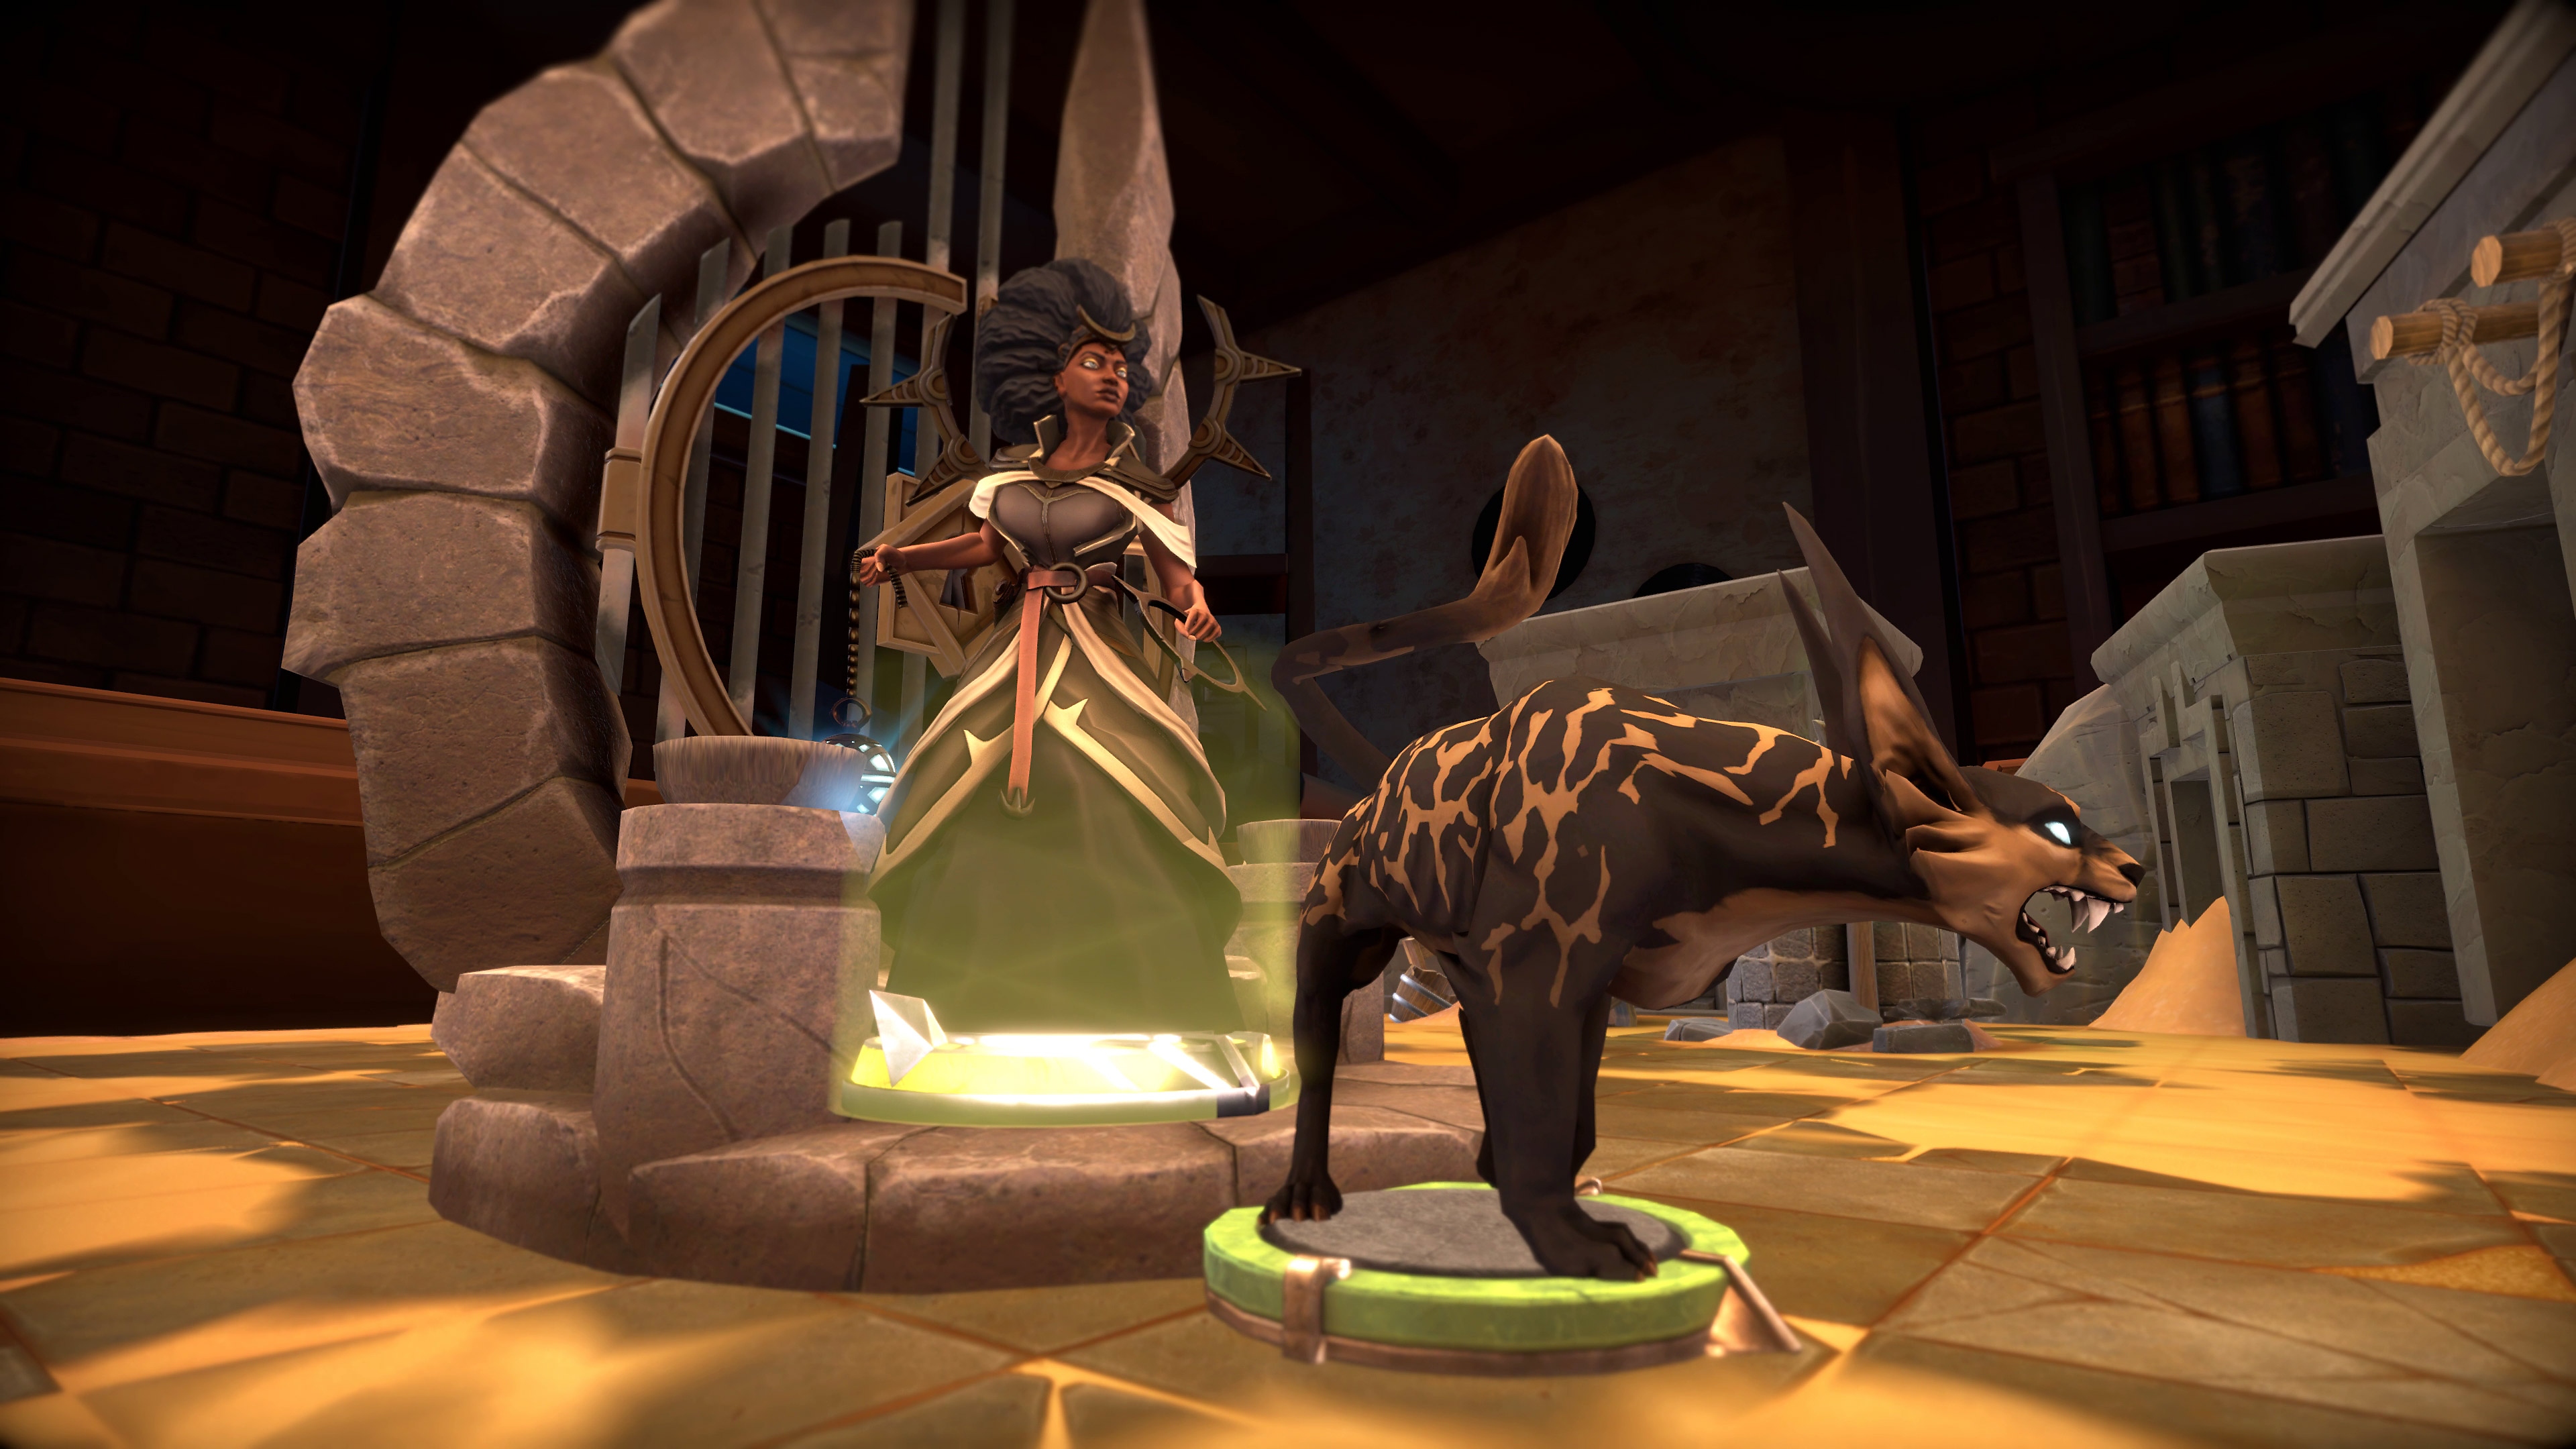 Capture d'écran de Demeo montrant une créature qui ressemble à une hyène, grognant et prête à attaquer.